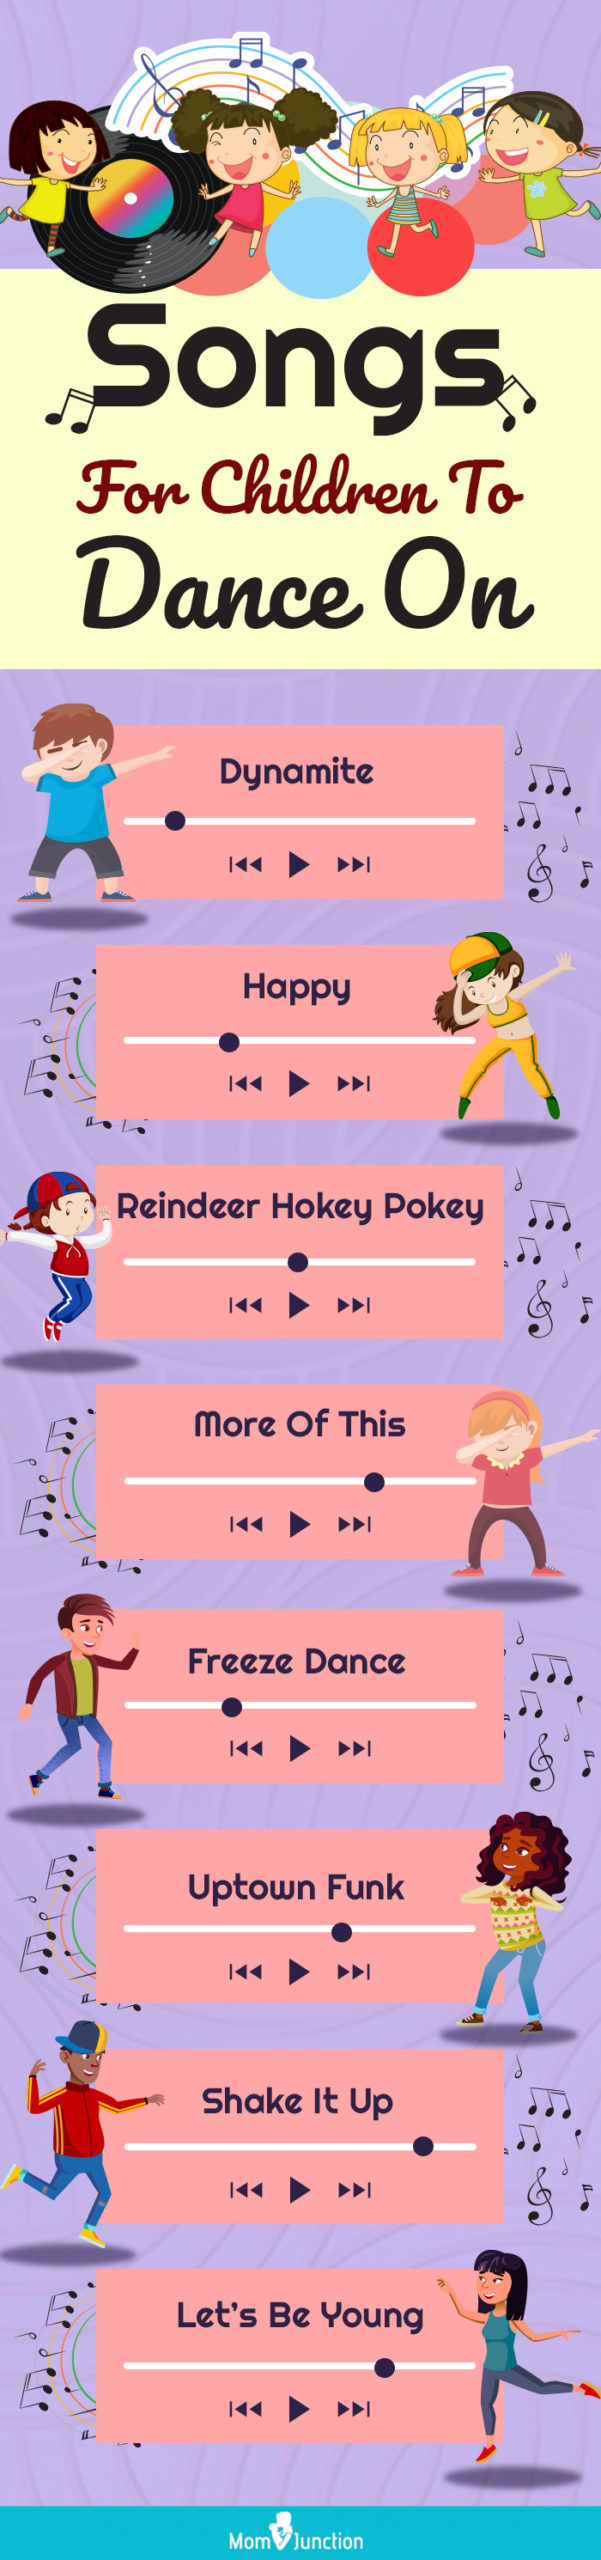 供孩子们跳舞的歌曲(信息图)